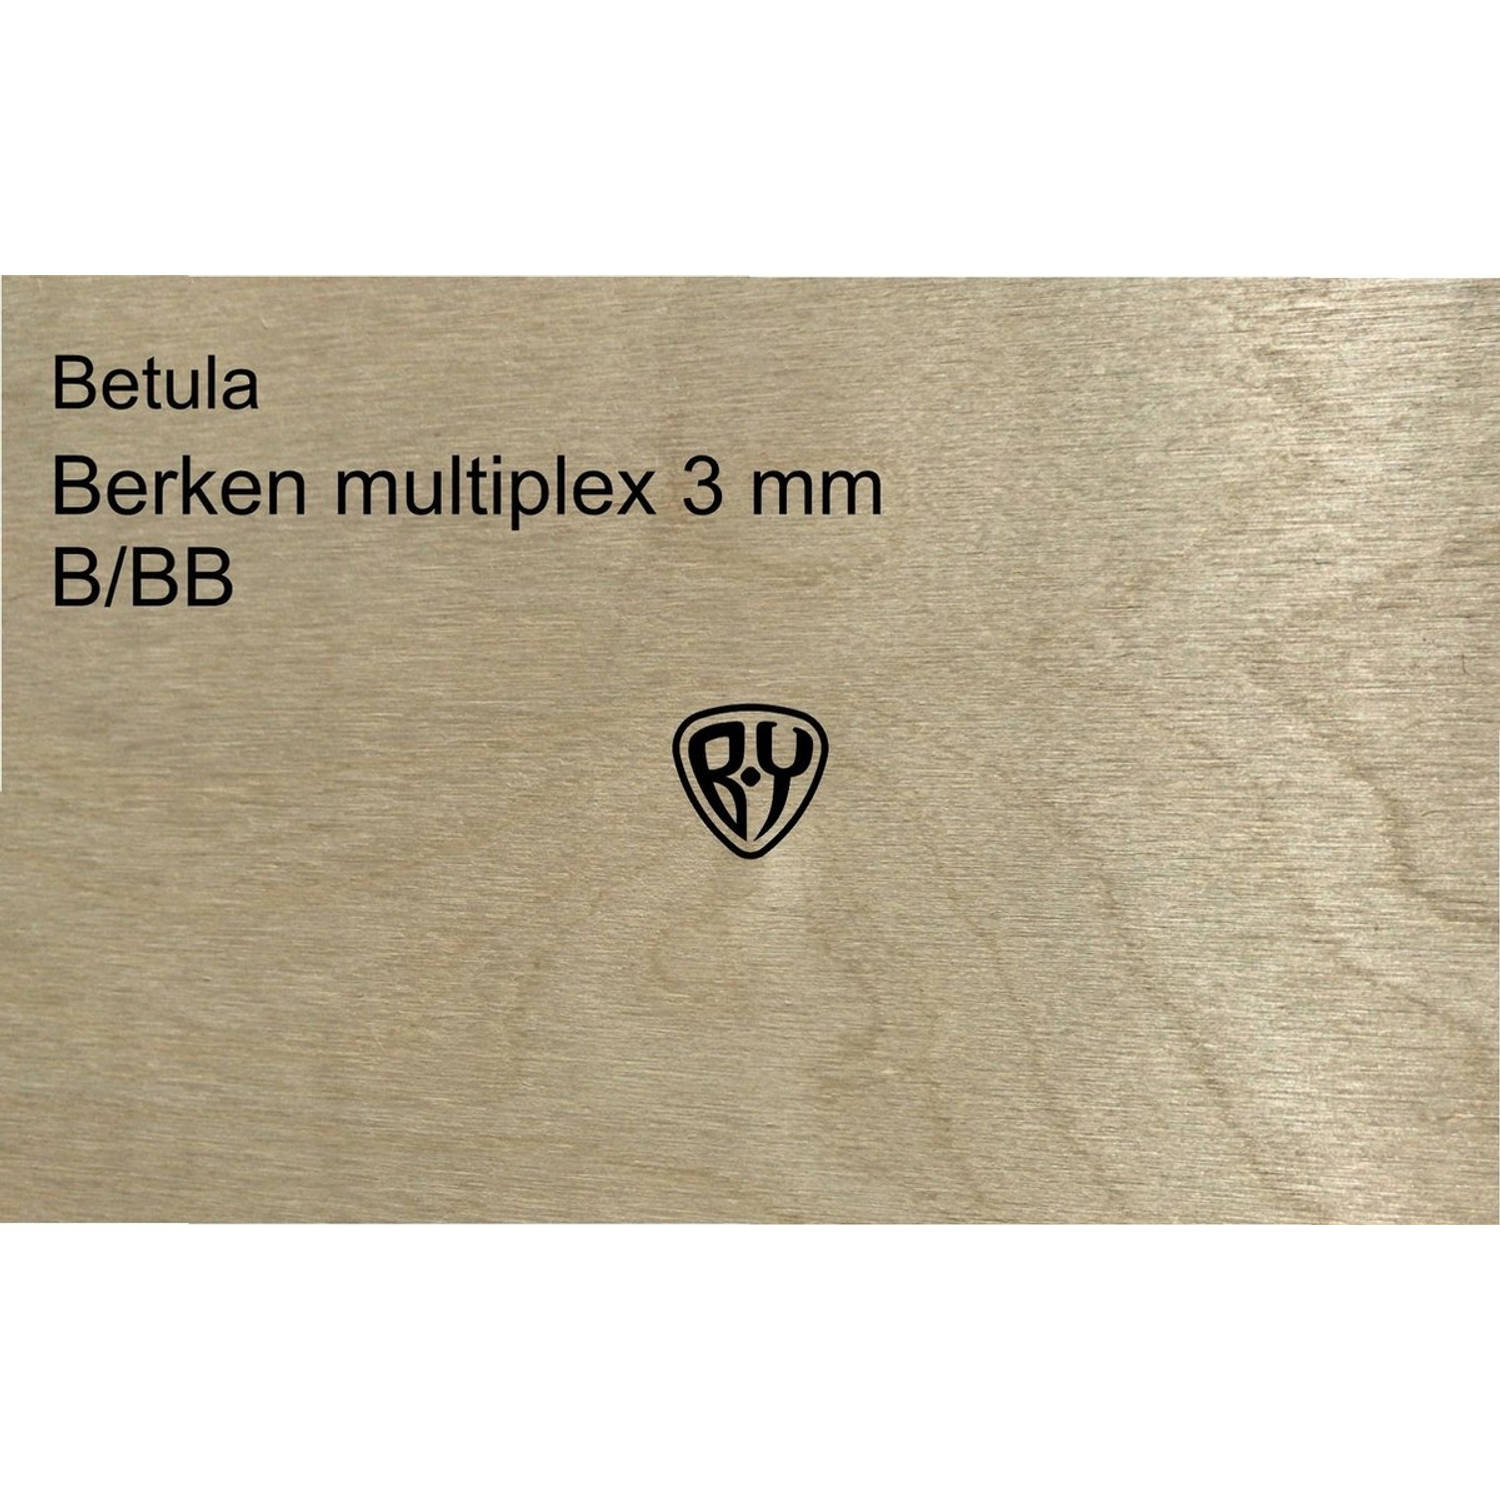 Betula Berken multiplex - 3 mm - A4 - 10 stuks 210x297 MM